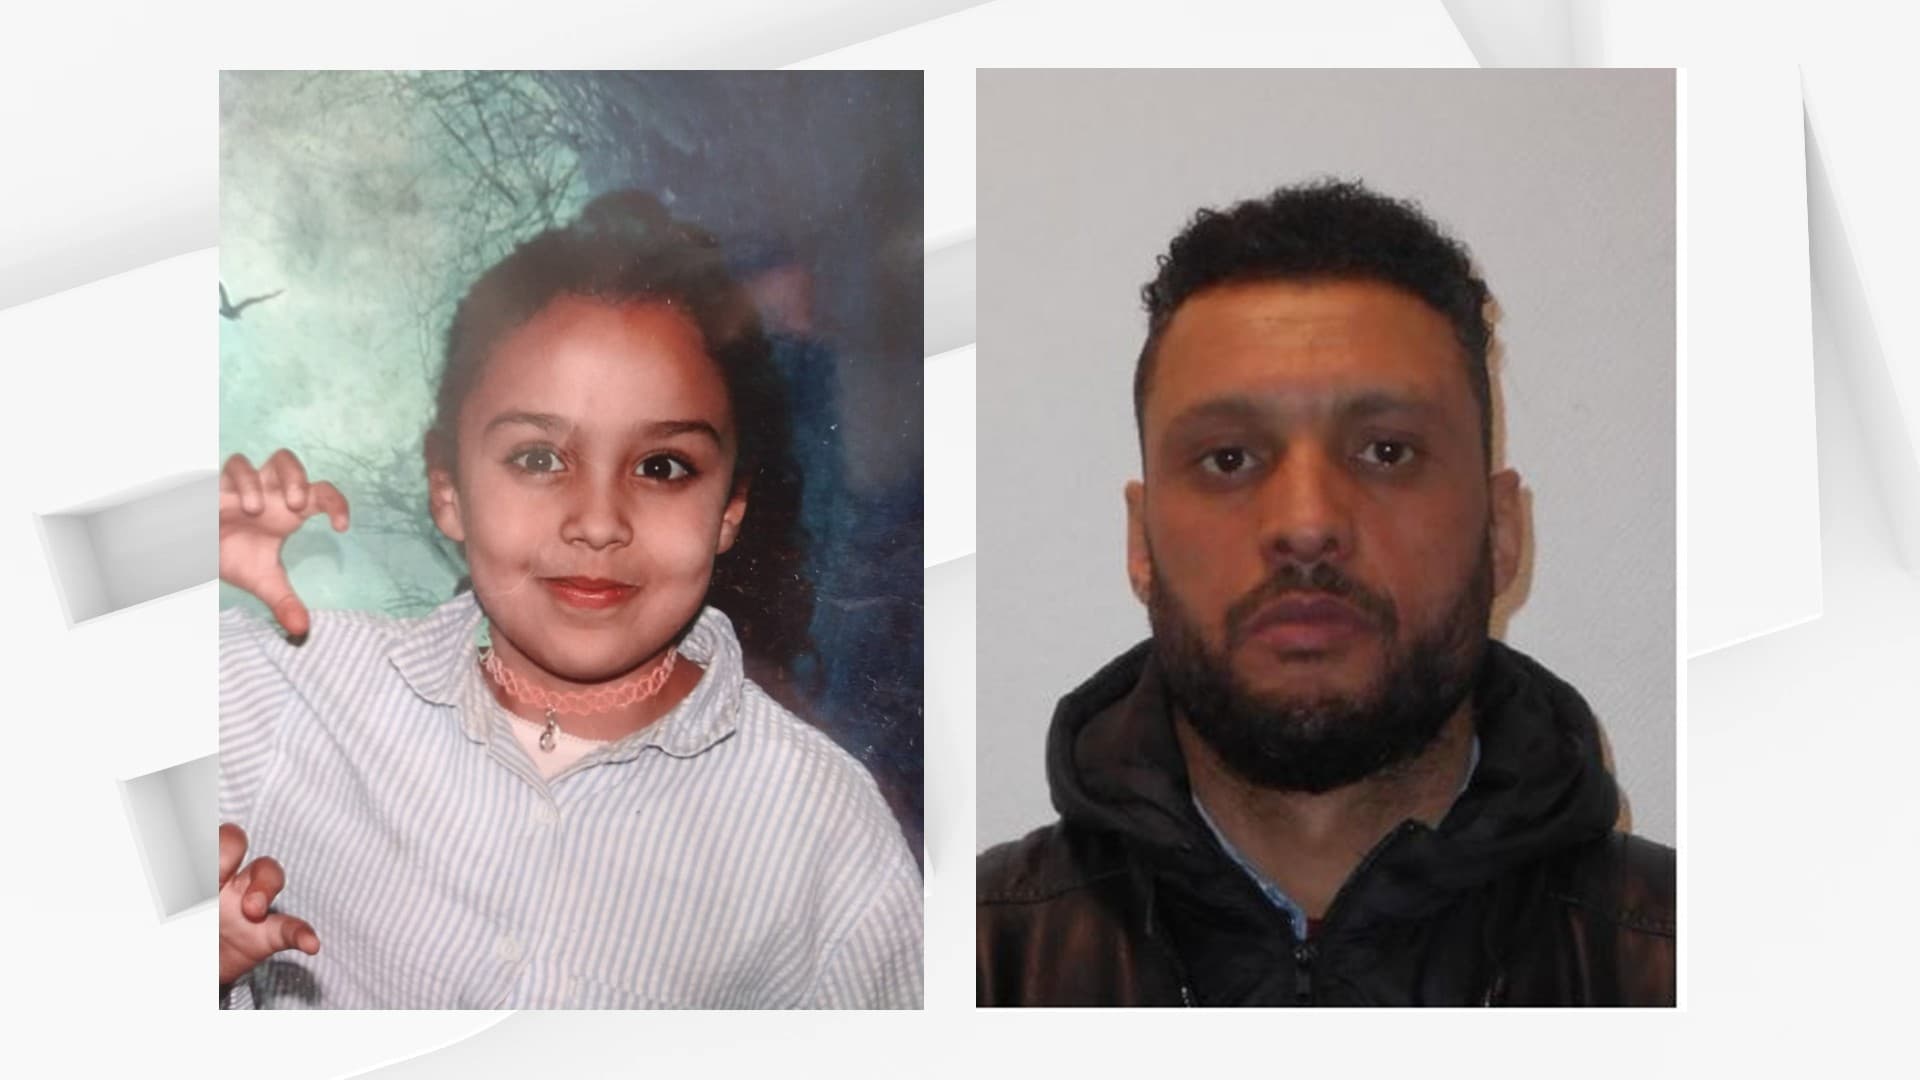 Alerte enlèvement pour une petite fille de 8 ans disparue à Dunkerque avec son père suspecté, après la découverte du corps de sa belle-mère victime de strangulation